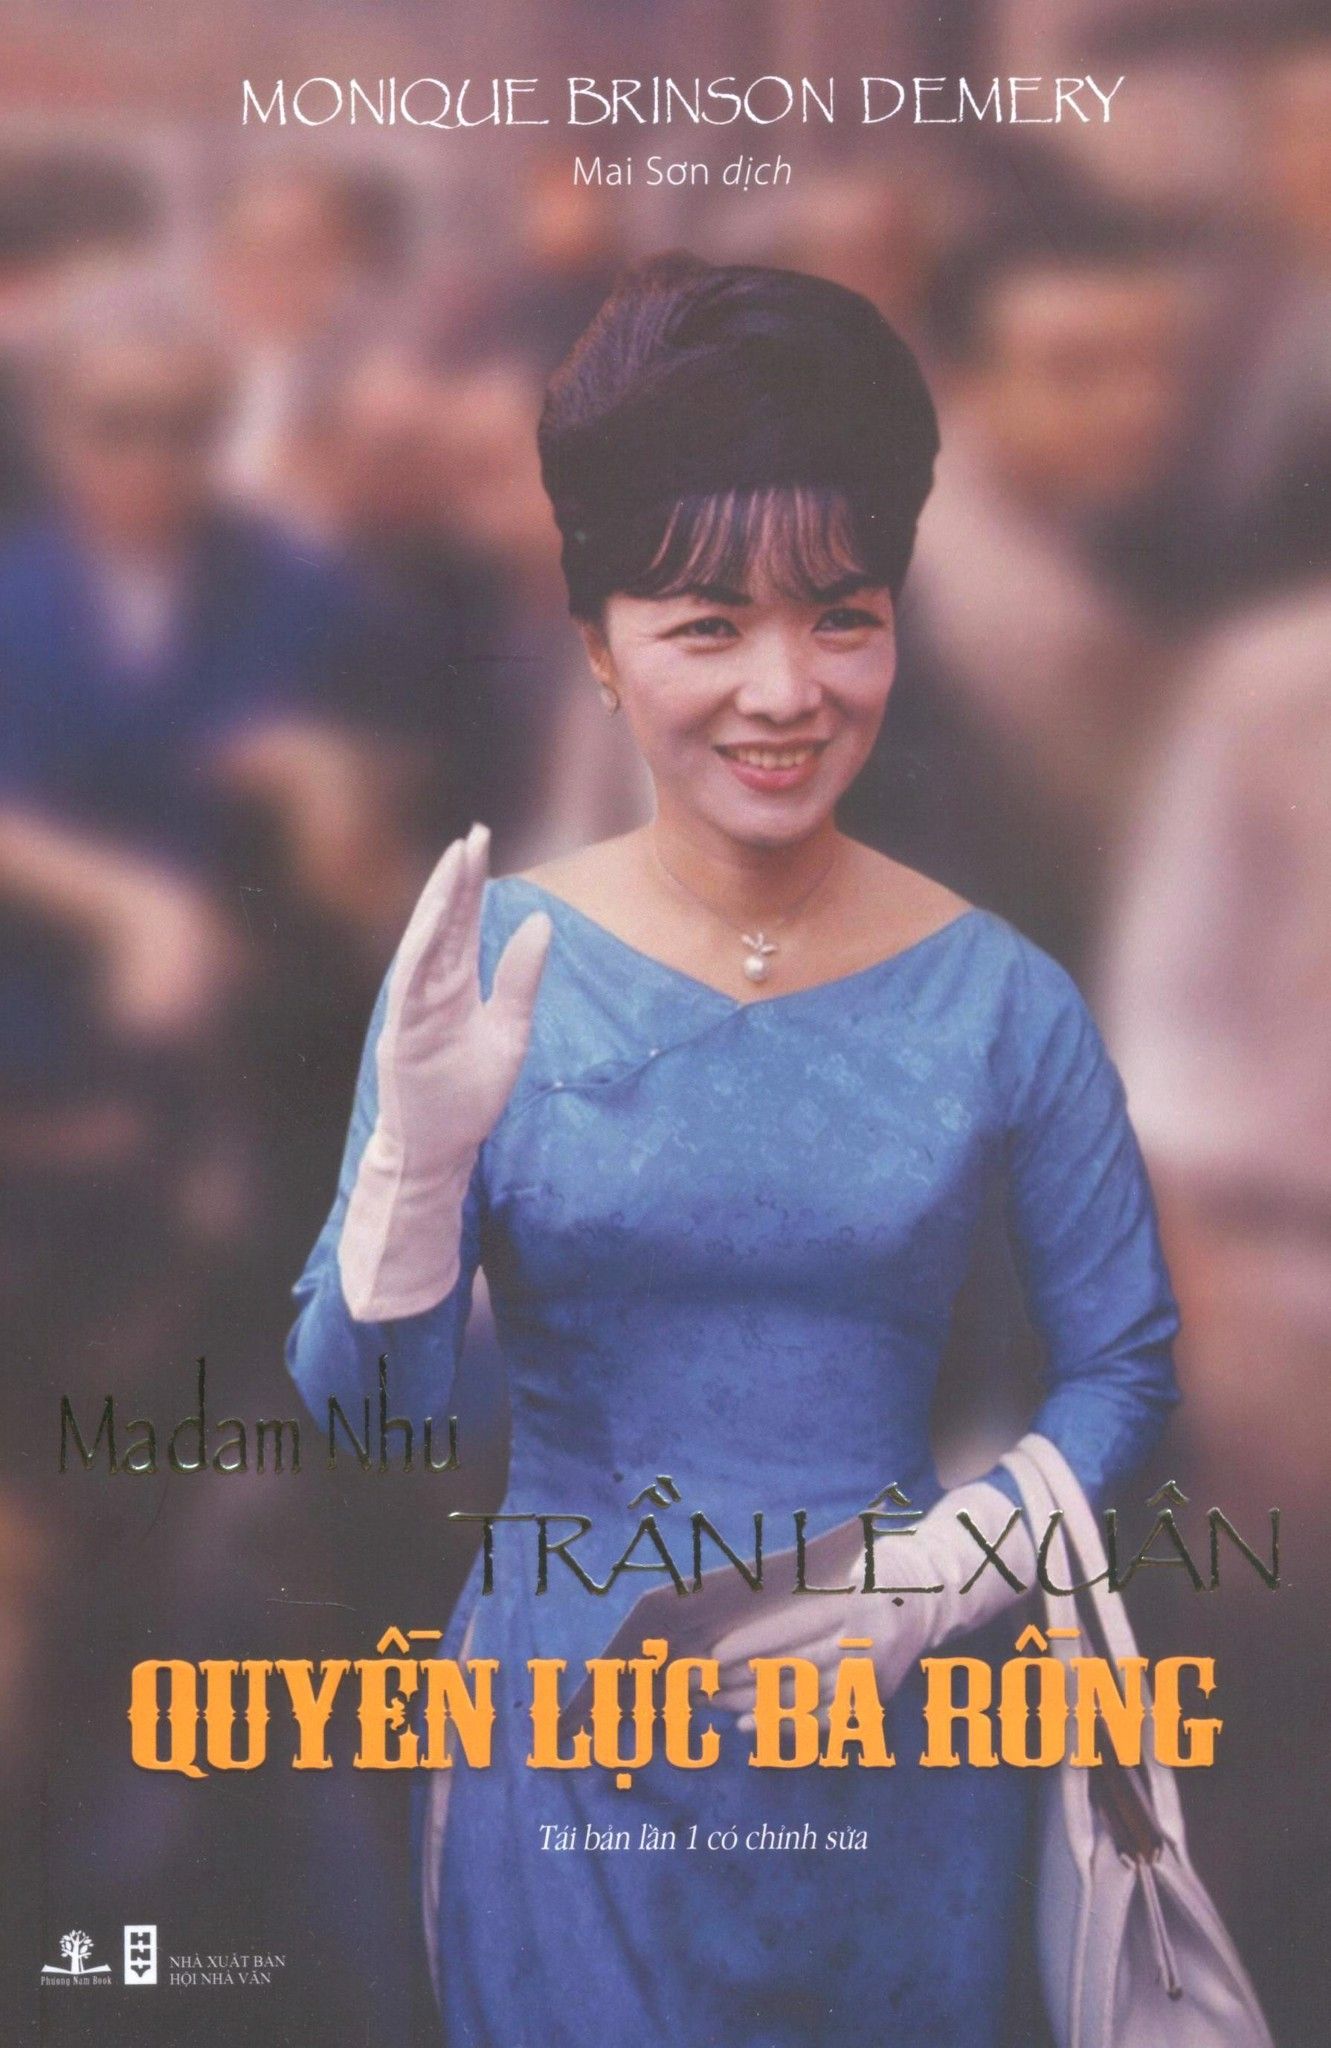  Madam Nhu Trần Lệ Xuân - Quyền Lực Bà Rồng (Sách Lỗi) 